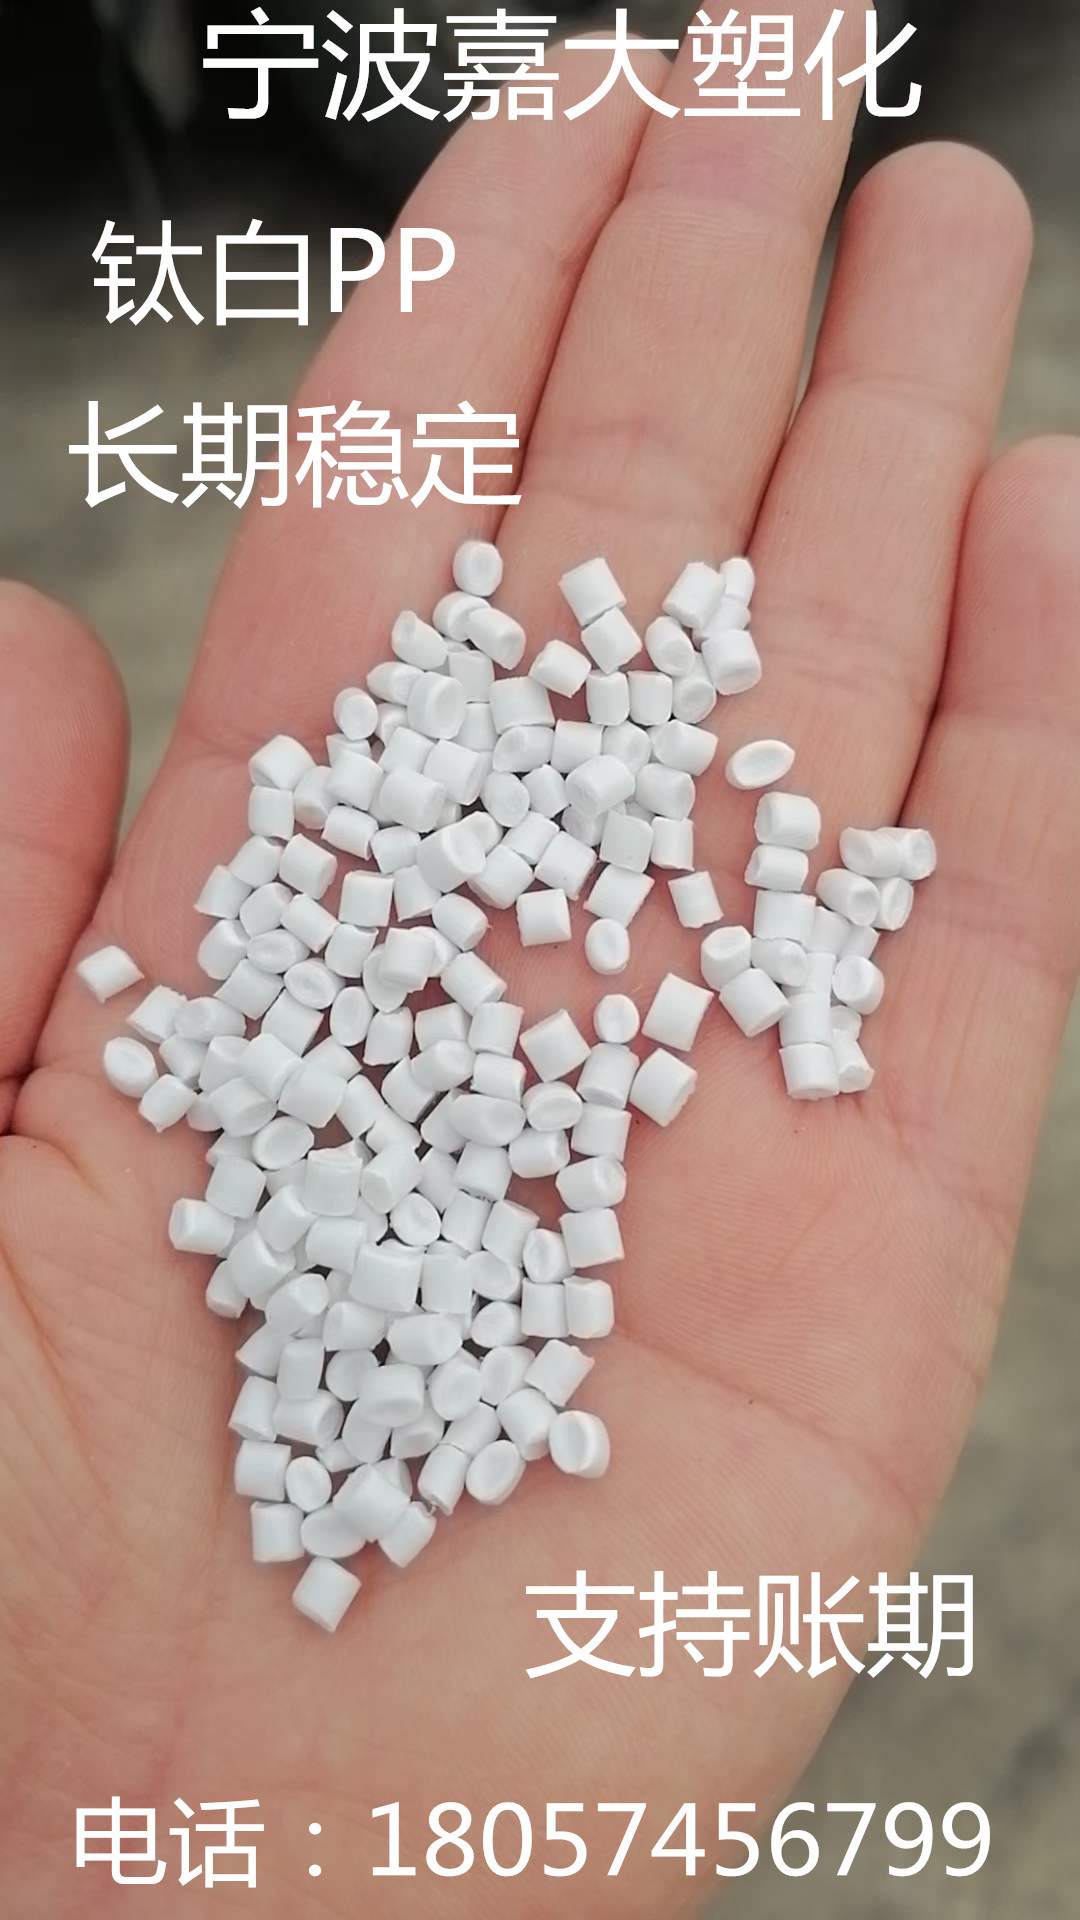 高冲低溶钛白共聚PP再生回料 冲击55 溶脂5 可代替K8003 价格便宜